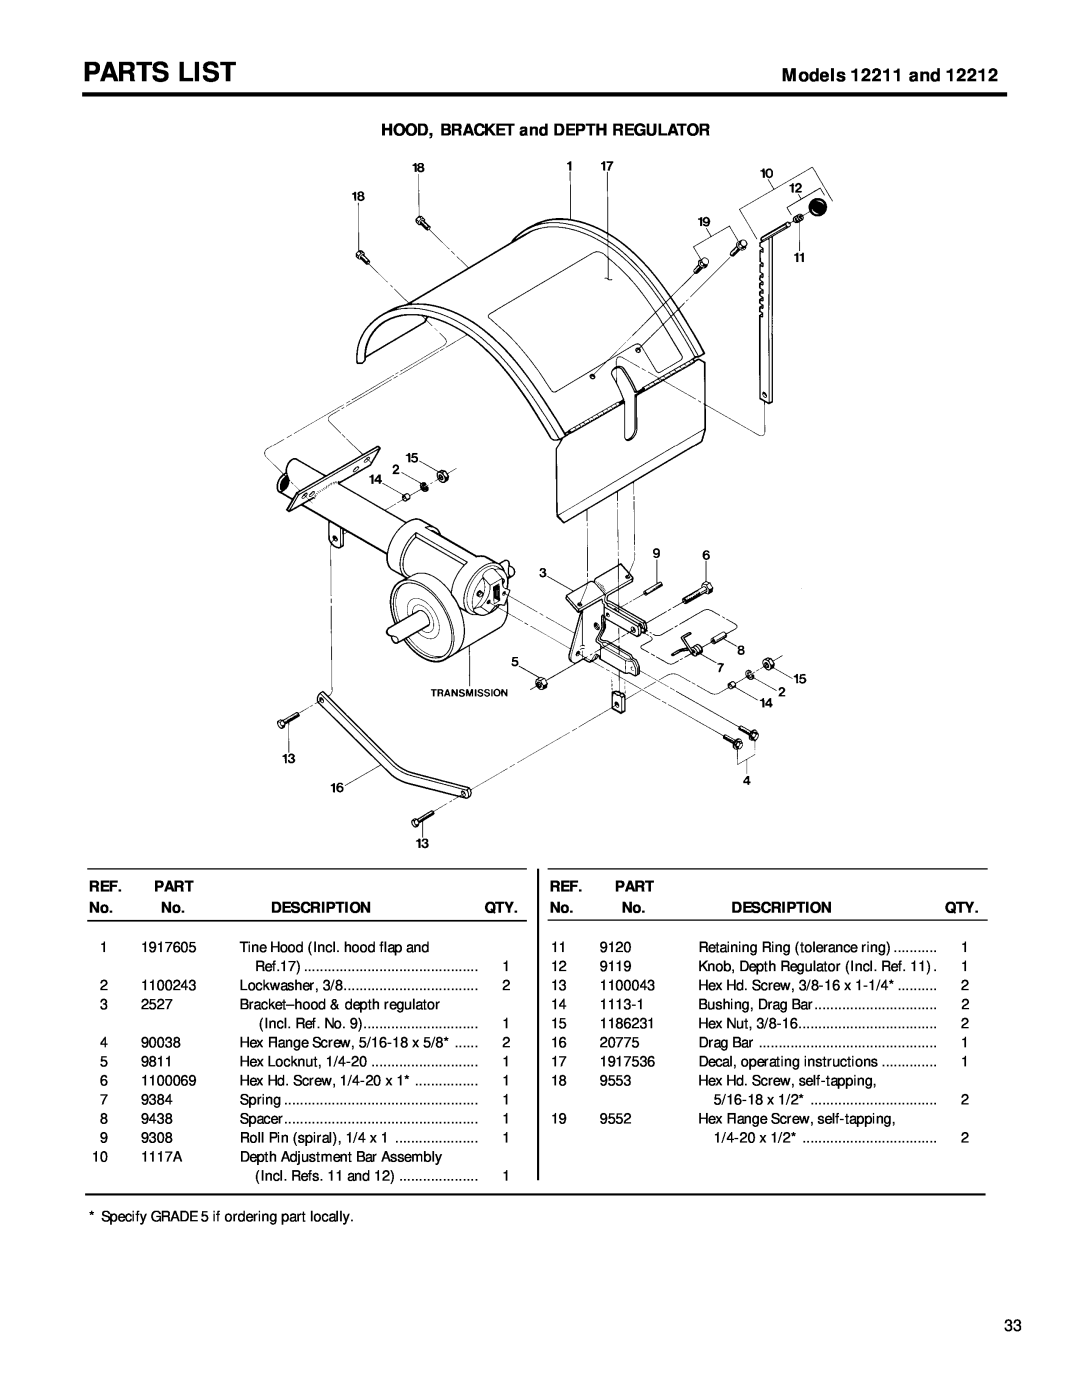 Troy-Bilt 12212 owner manual Parts List, Models 12211 and, HOOD, BRACKET and DEPTH REGULATOR, Description 